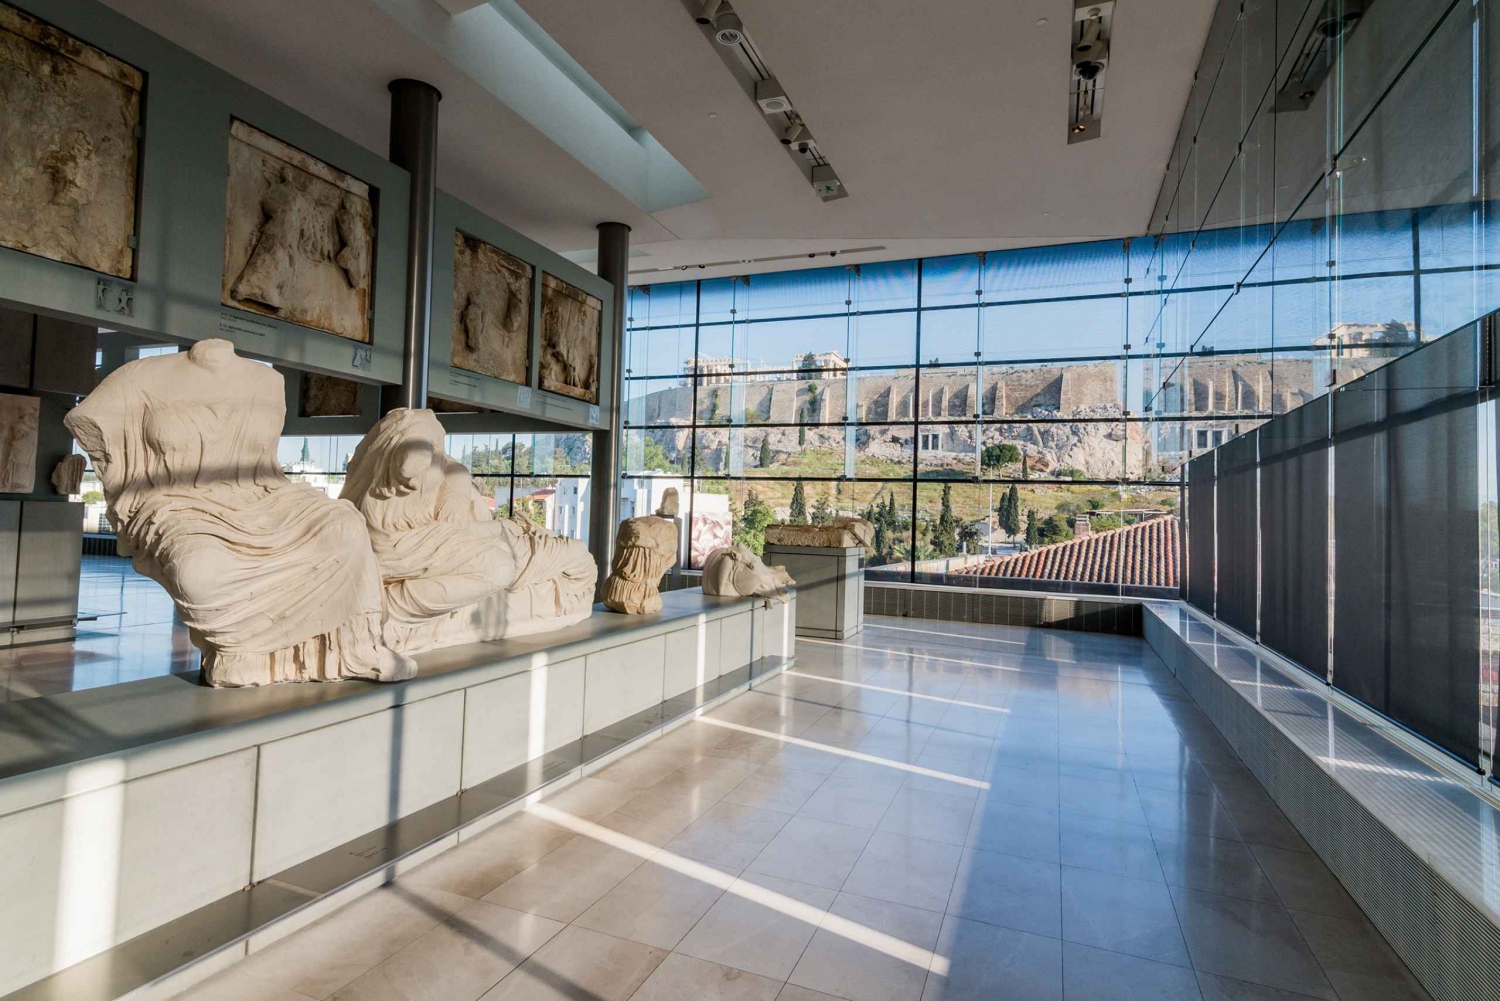 Athens: Acropolis, Parthenon, & Acropolis Museum Guided Tour